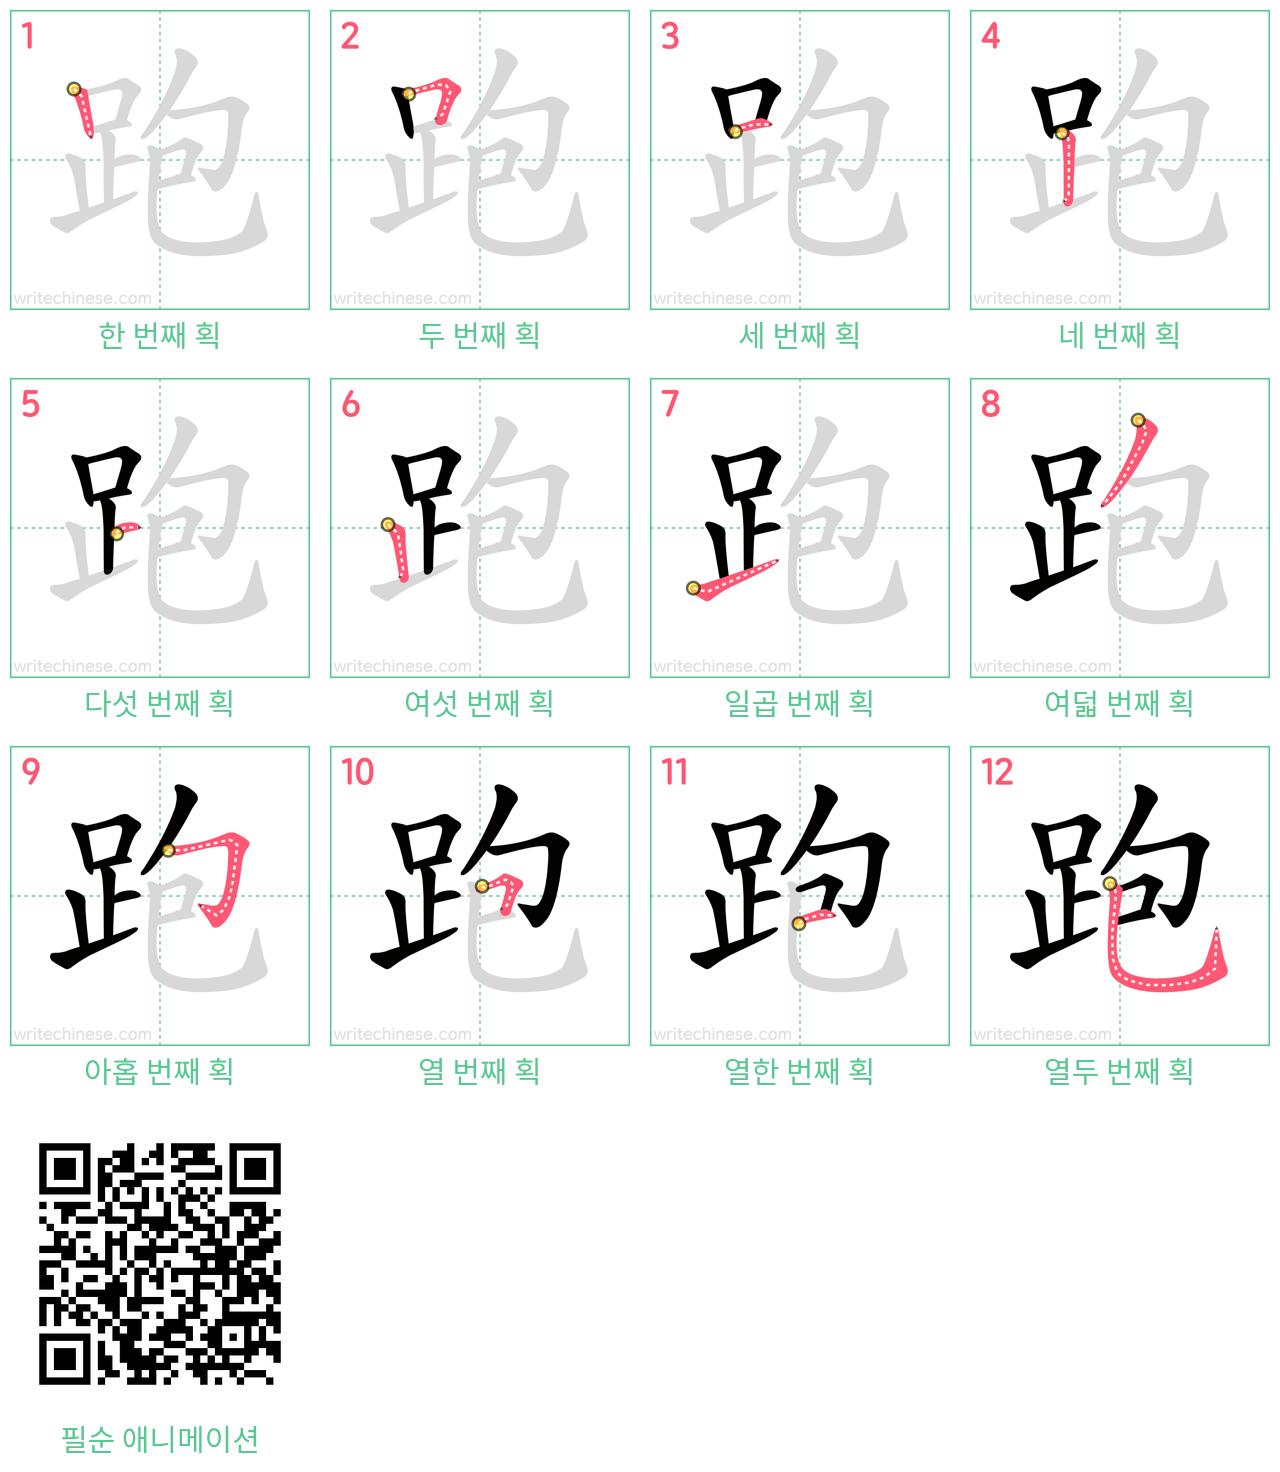 跑 step-by-step stroke order diagrams